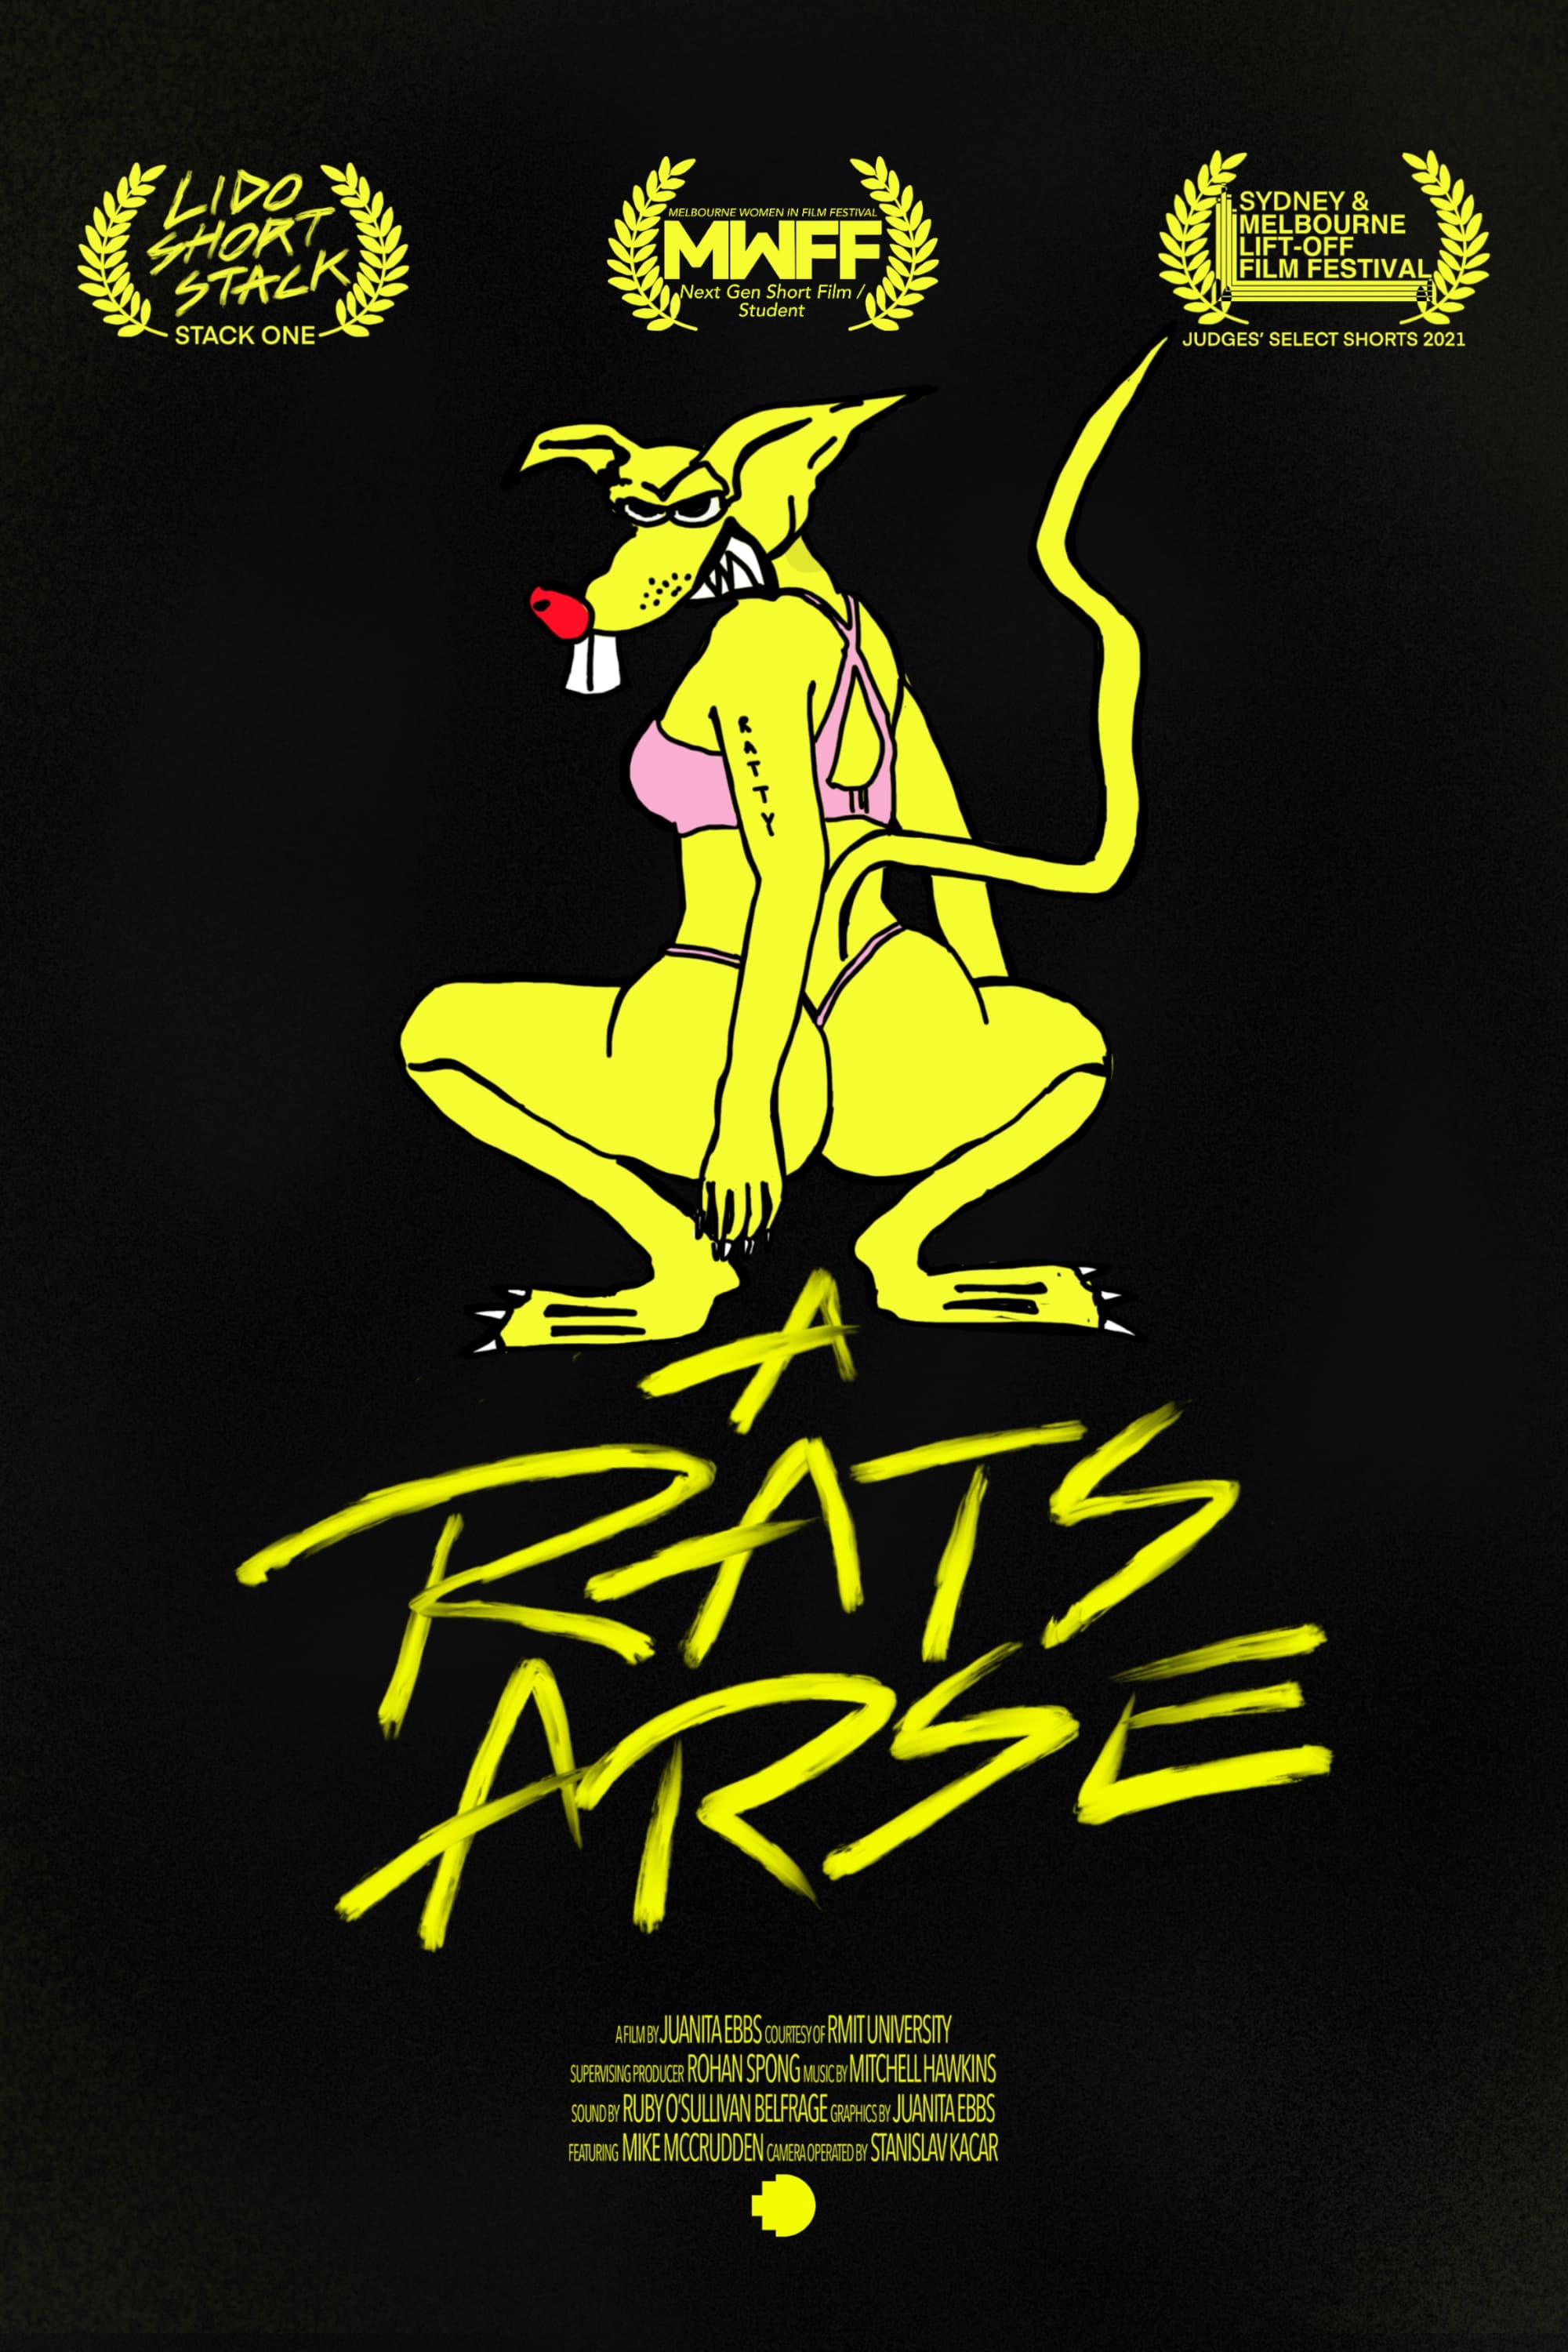 A Rats Arse